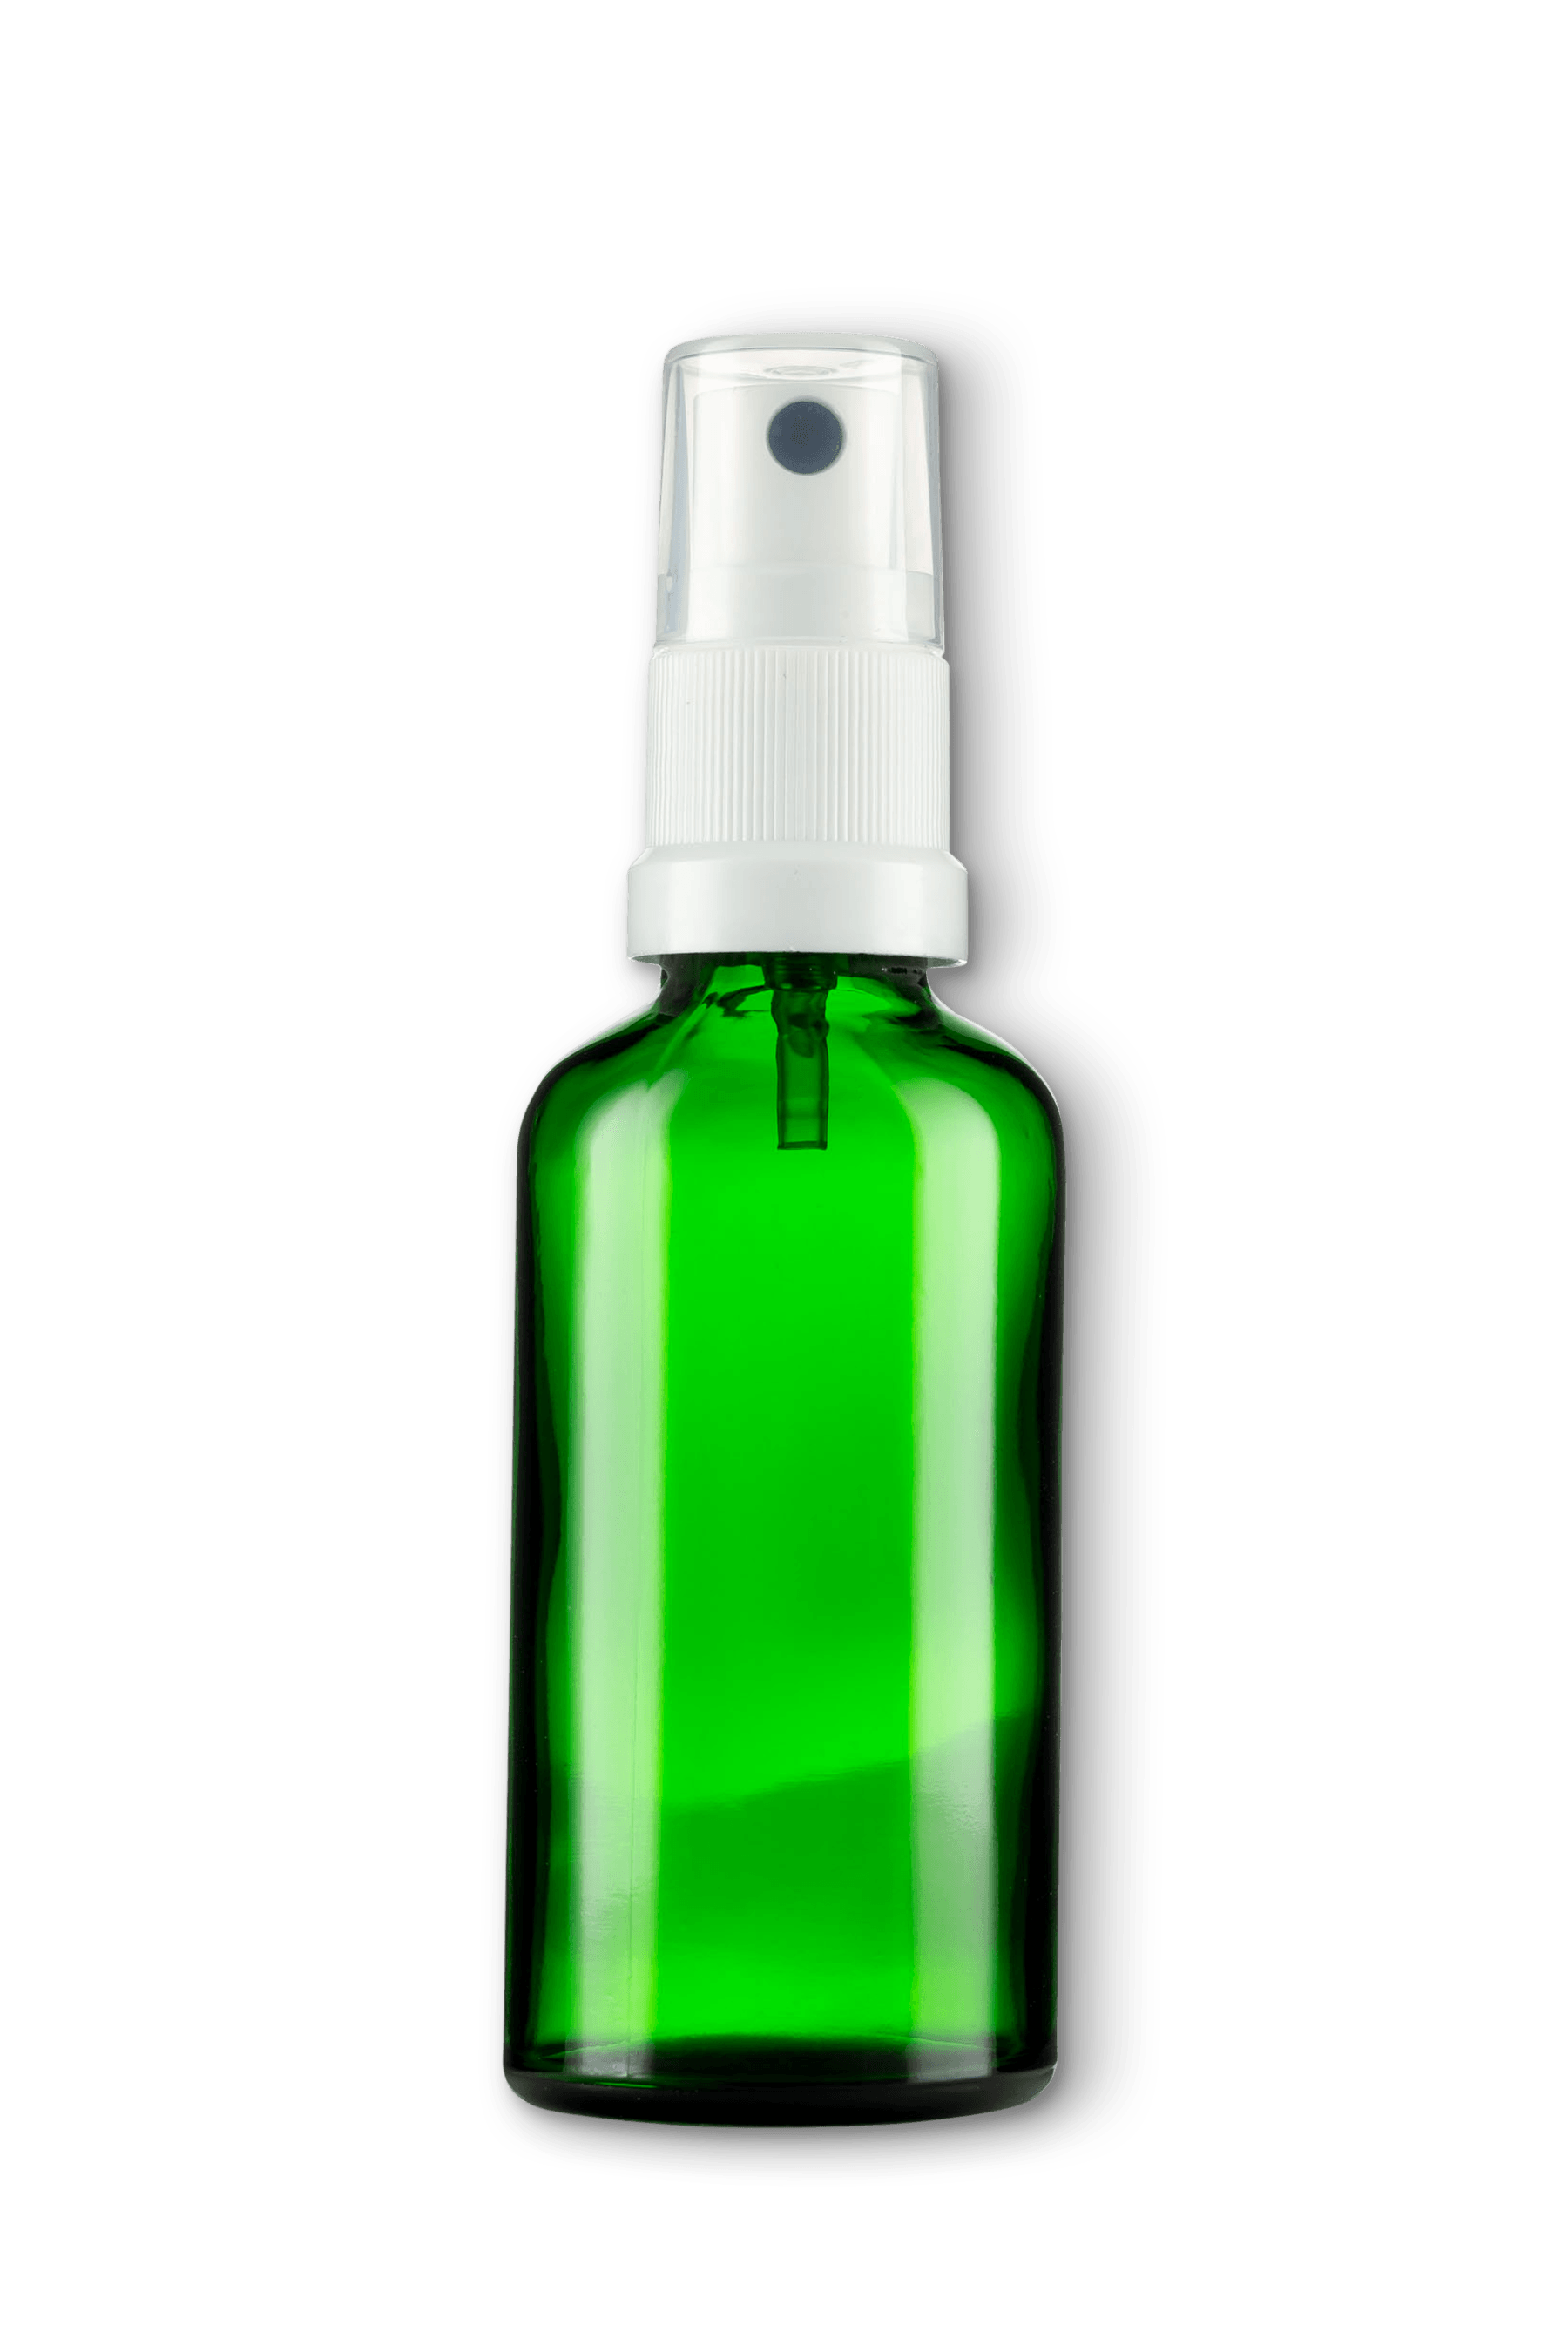 Bottle Green Transparent Images